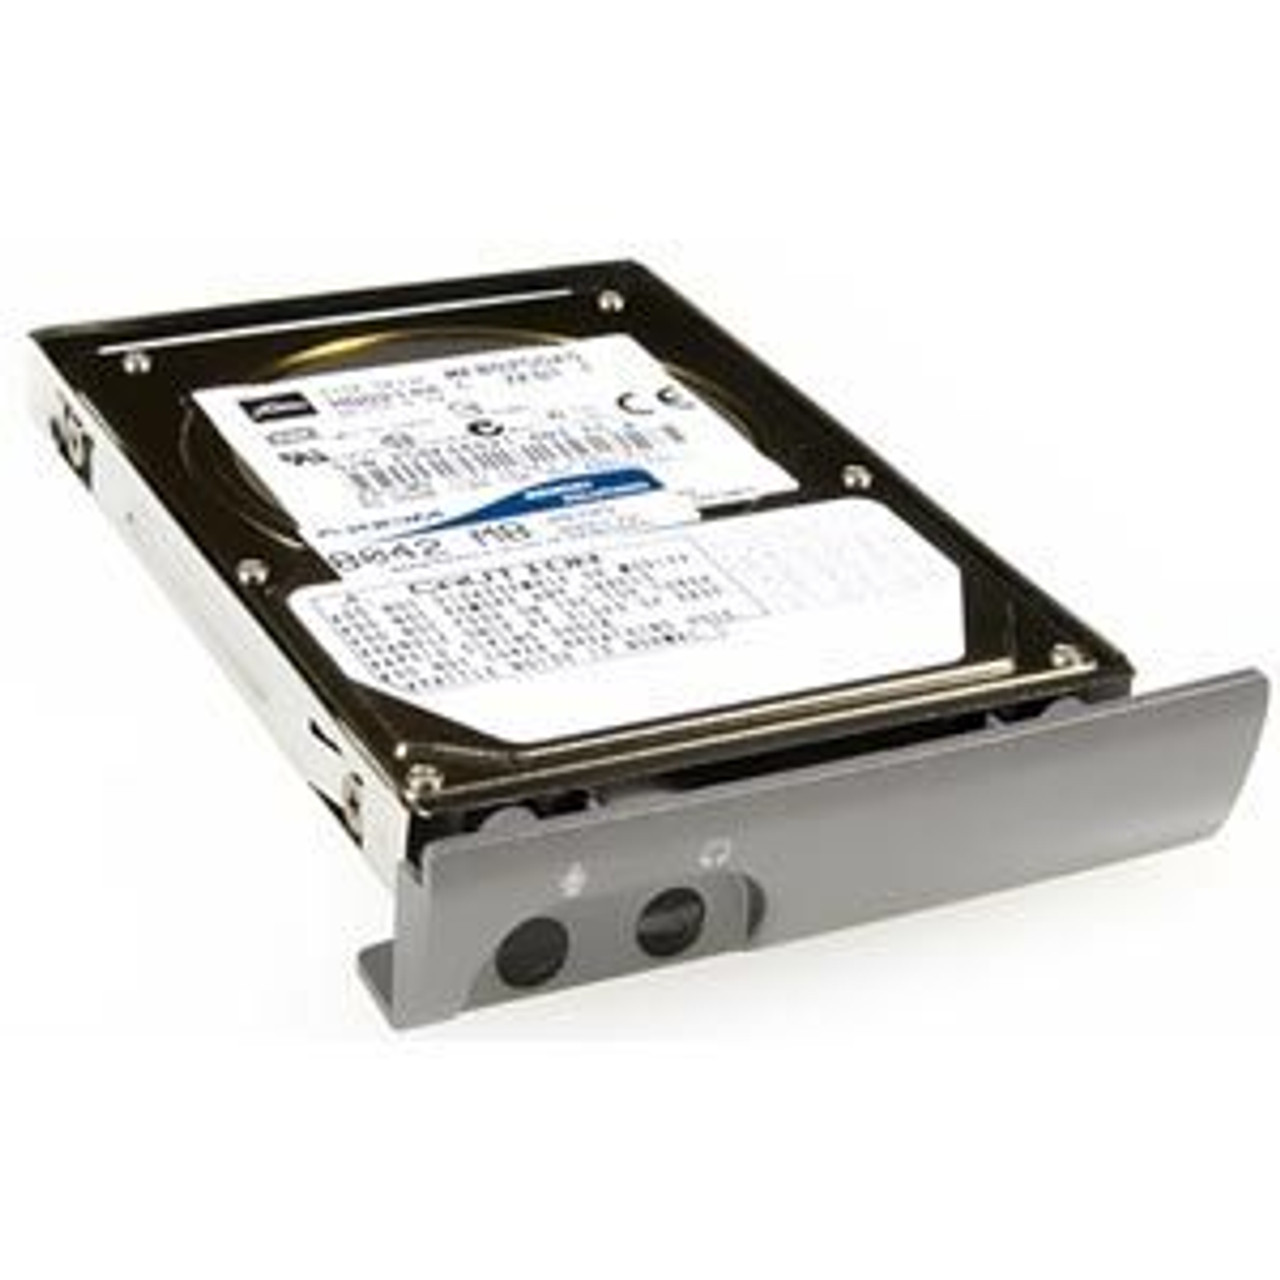 41N3015-AXA - Axiom 250 GB 3.5 Internal Hard Drive - SATA/150 - 7200 rpm